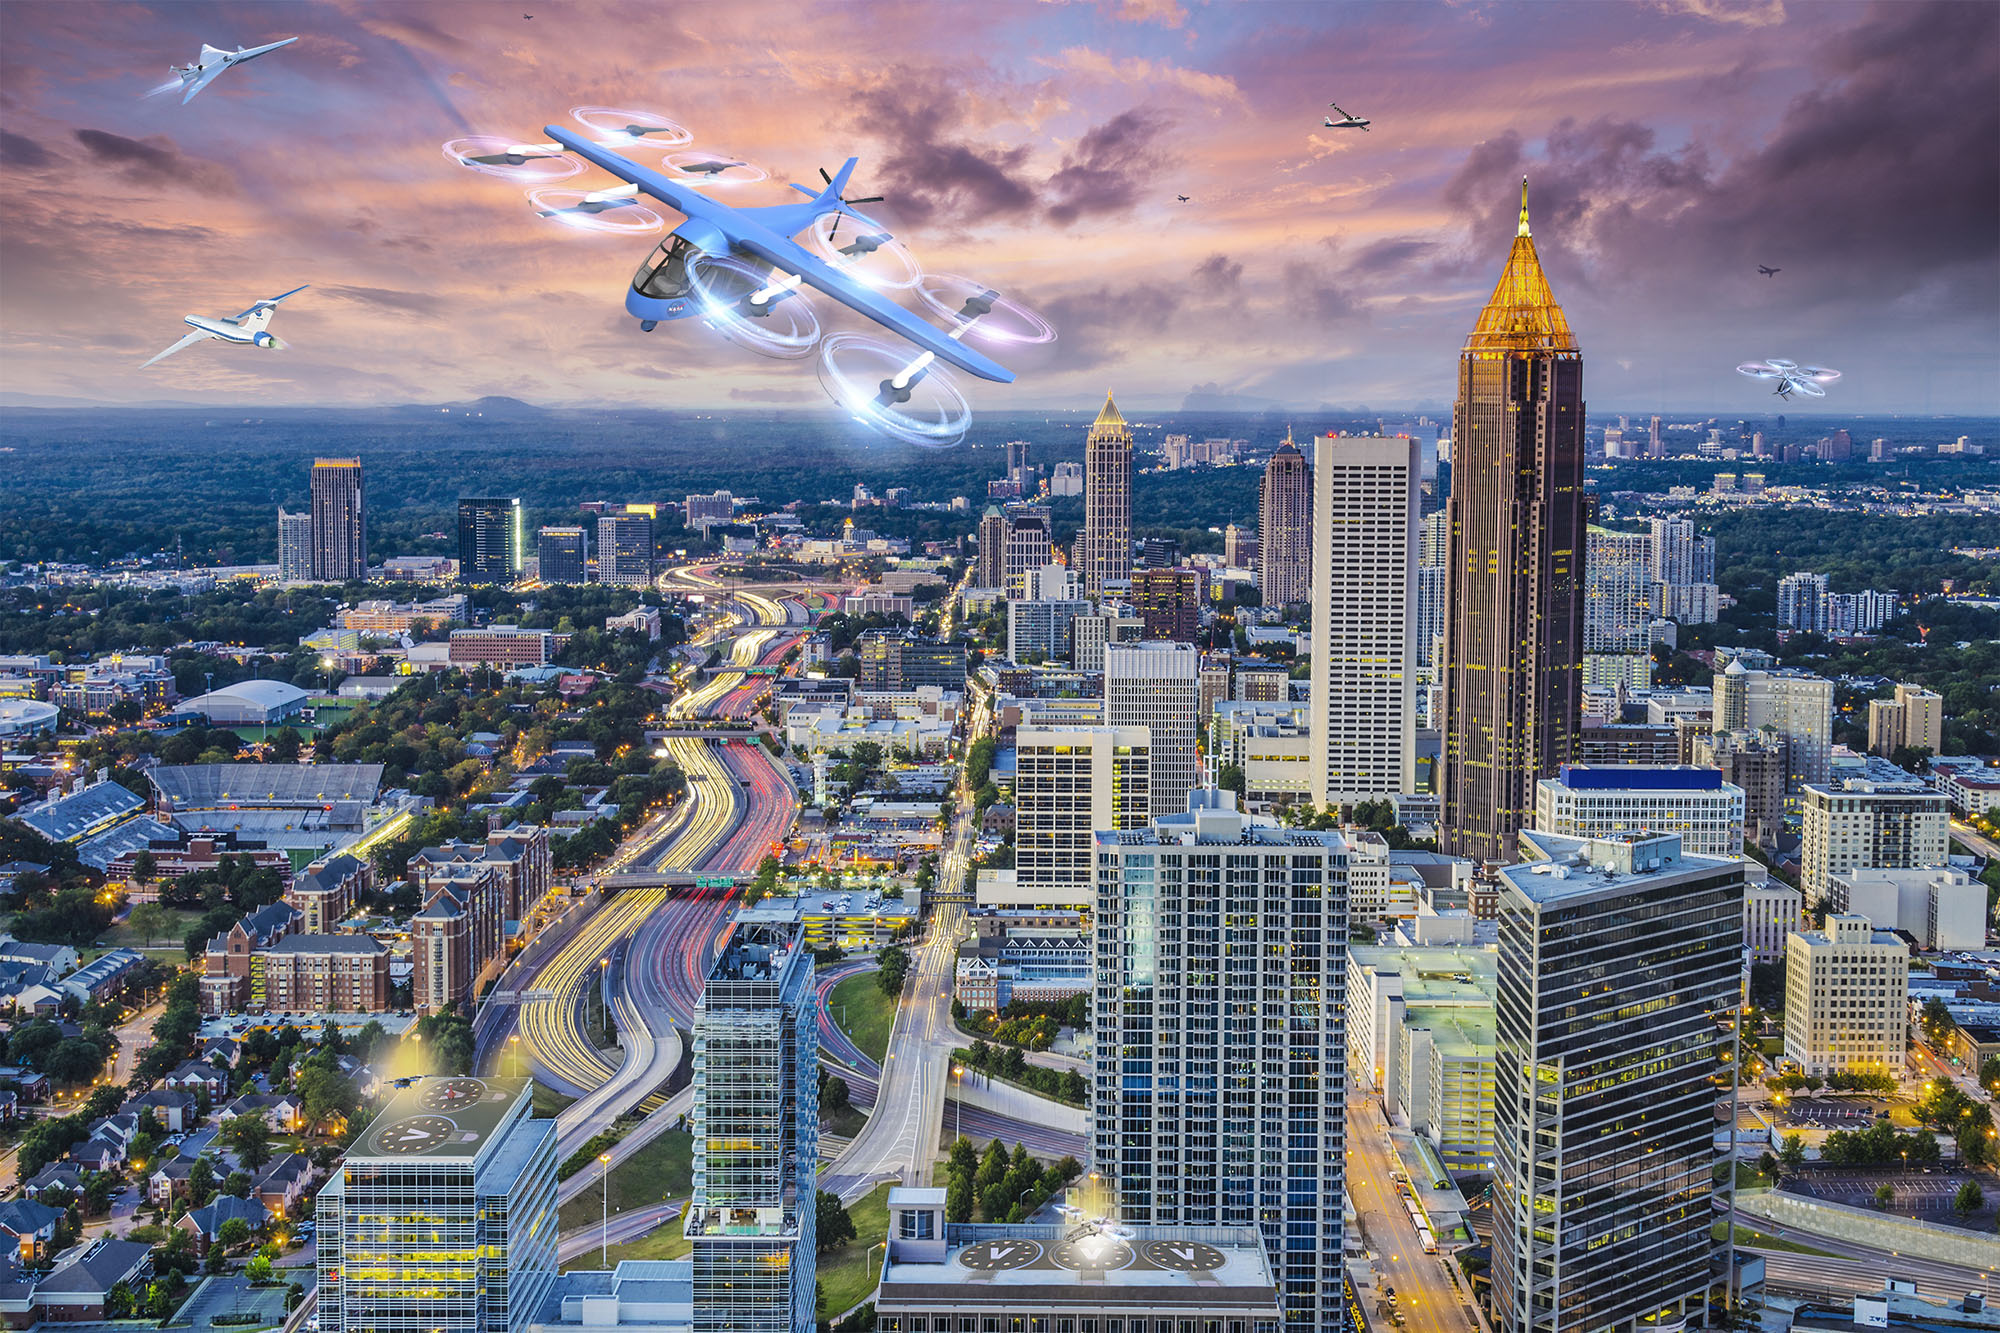 无人驾驶飞机和飞车在亚特兰大市中心嗡嗡作响，这是美国宇航局一个推测性项目的一部分